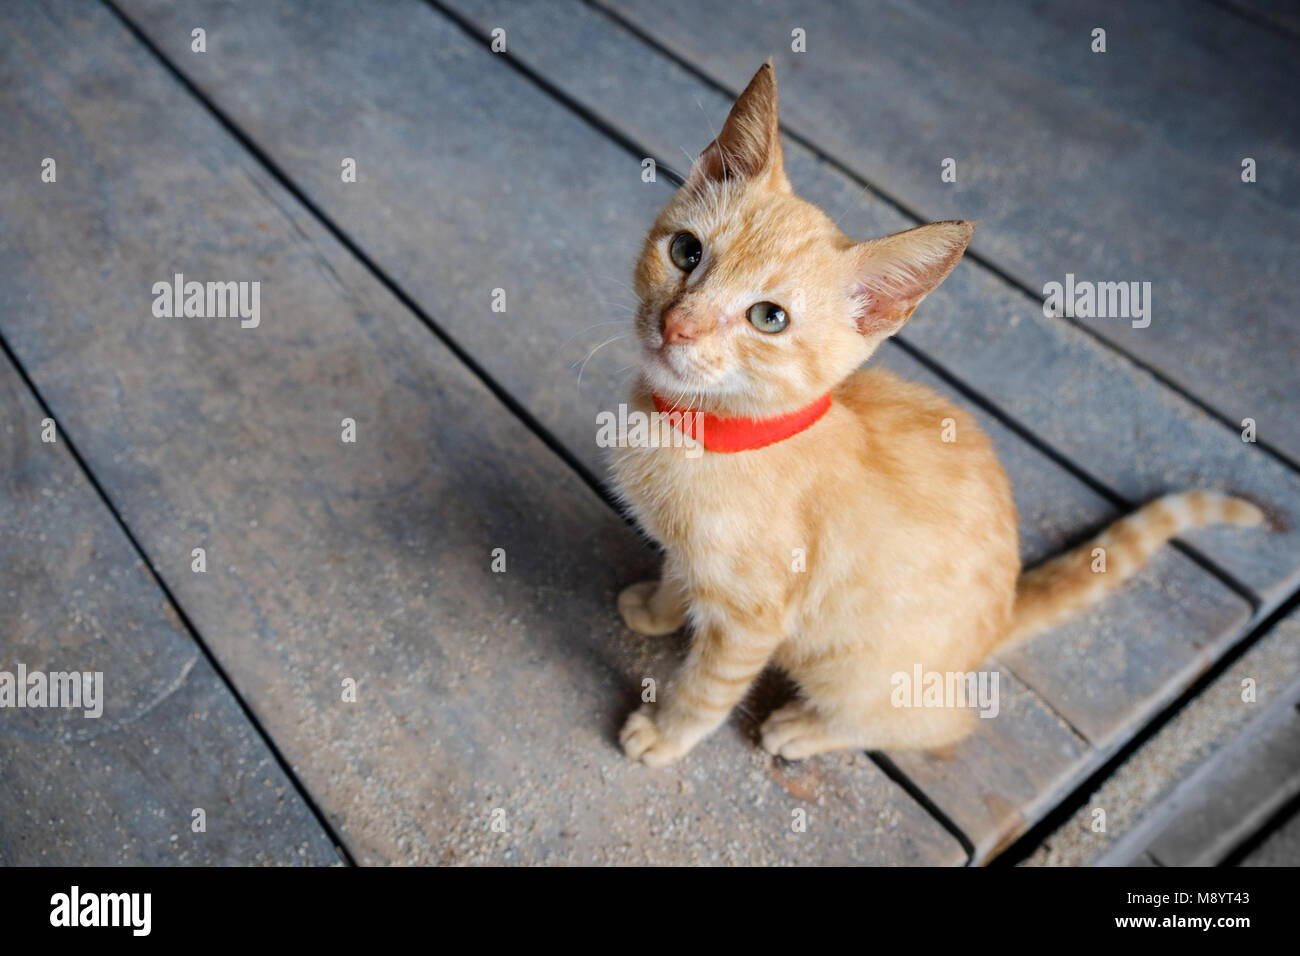 Junge rote Katze auf Holz- Hintergrund nach oben geschaut - orange Kitty - Stockfoto